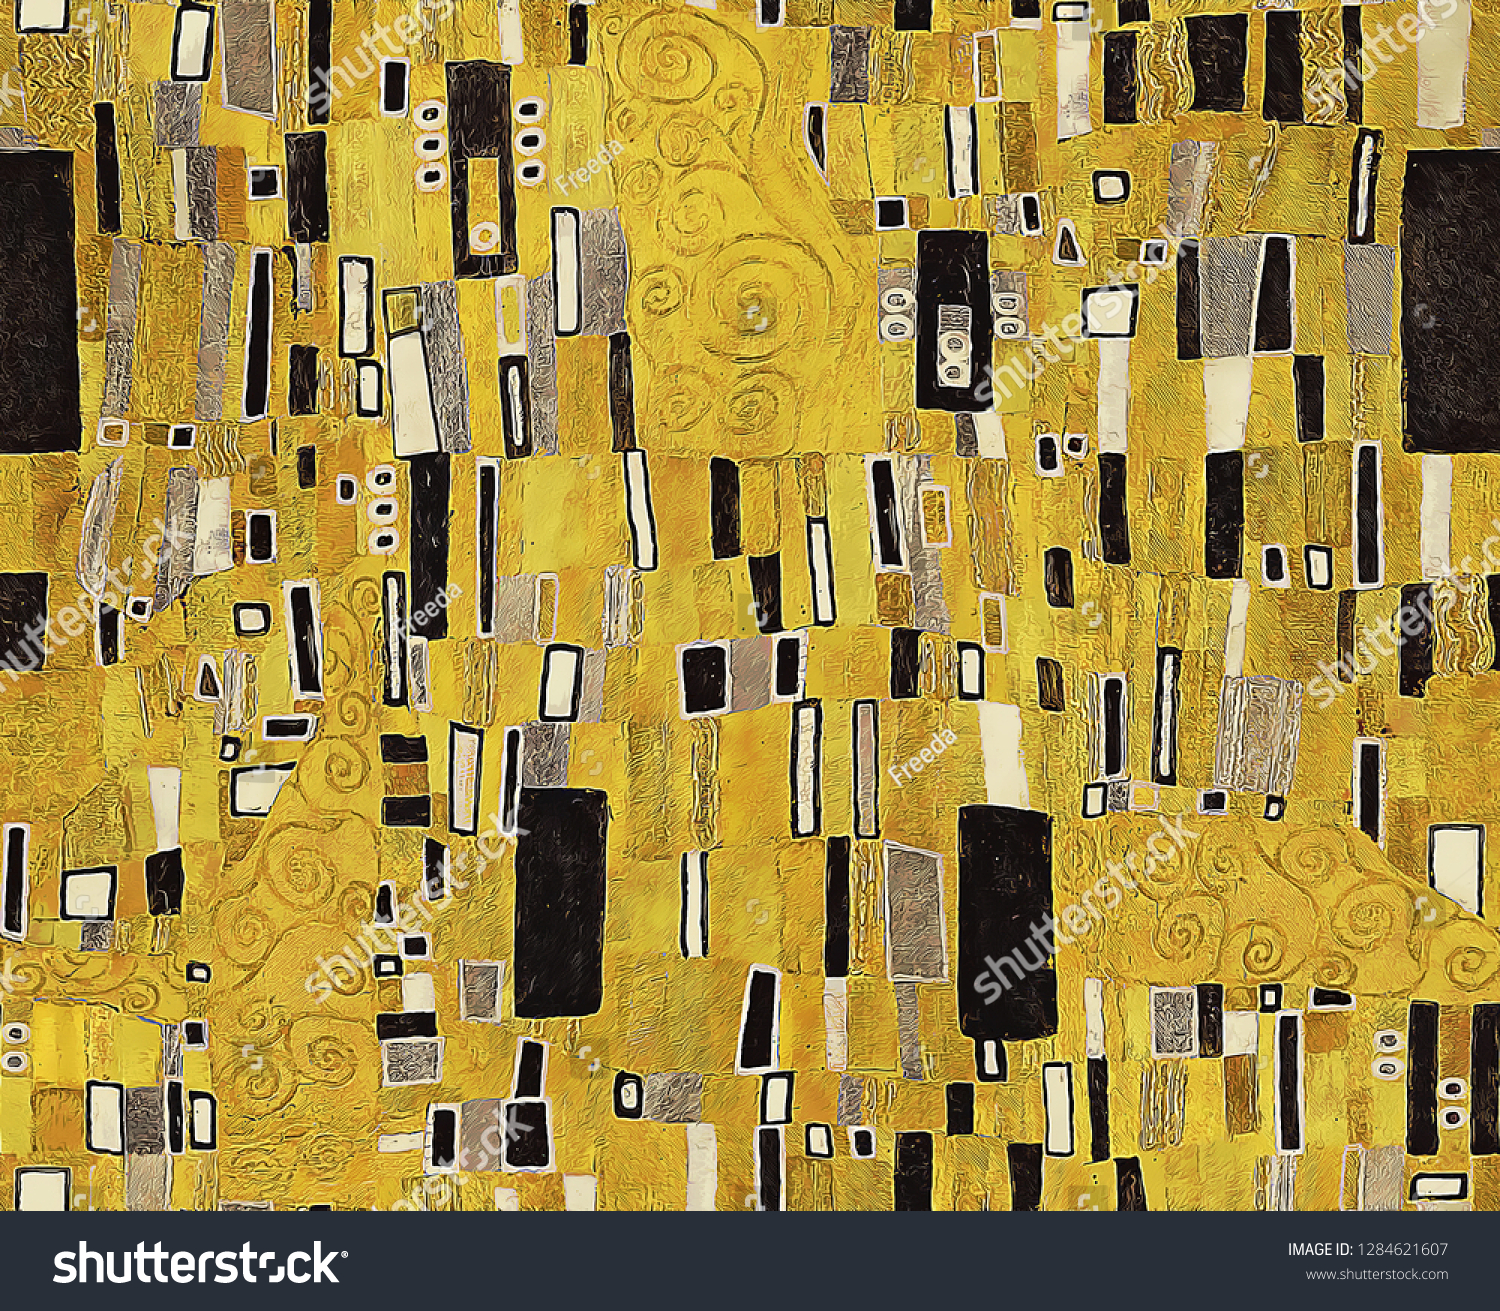 金色の背景に幾何学的な白黒の長方形の模様と渦巻き状の線を ウィーンの分離派の装飾 クリムト柄の様式でデジタル絵画 のイラスト素材